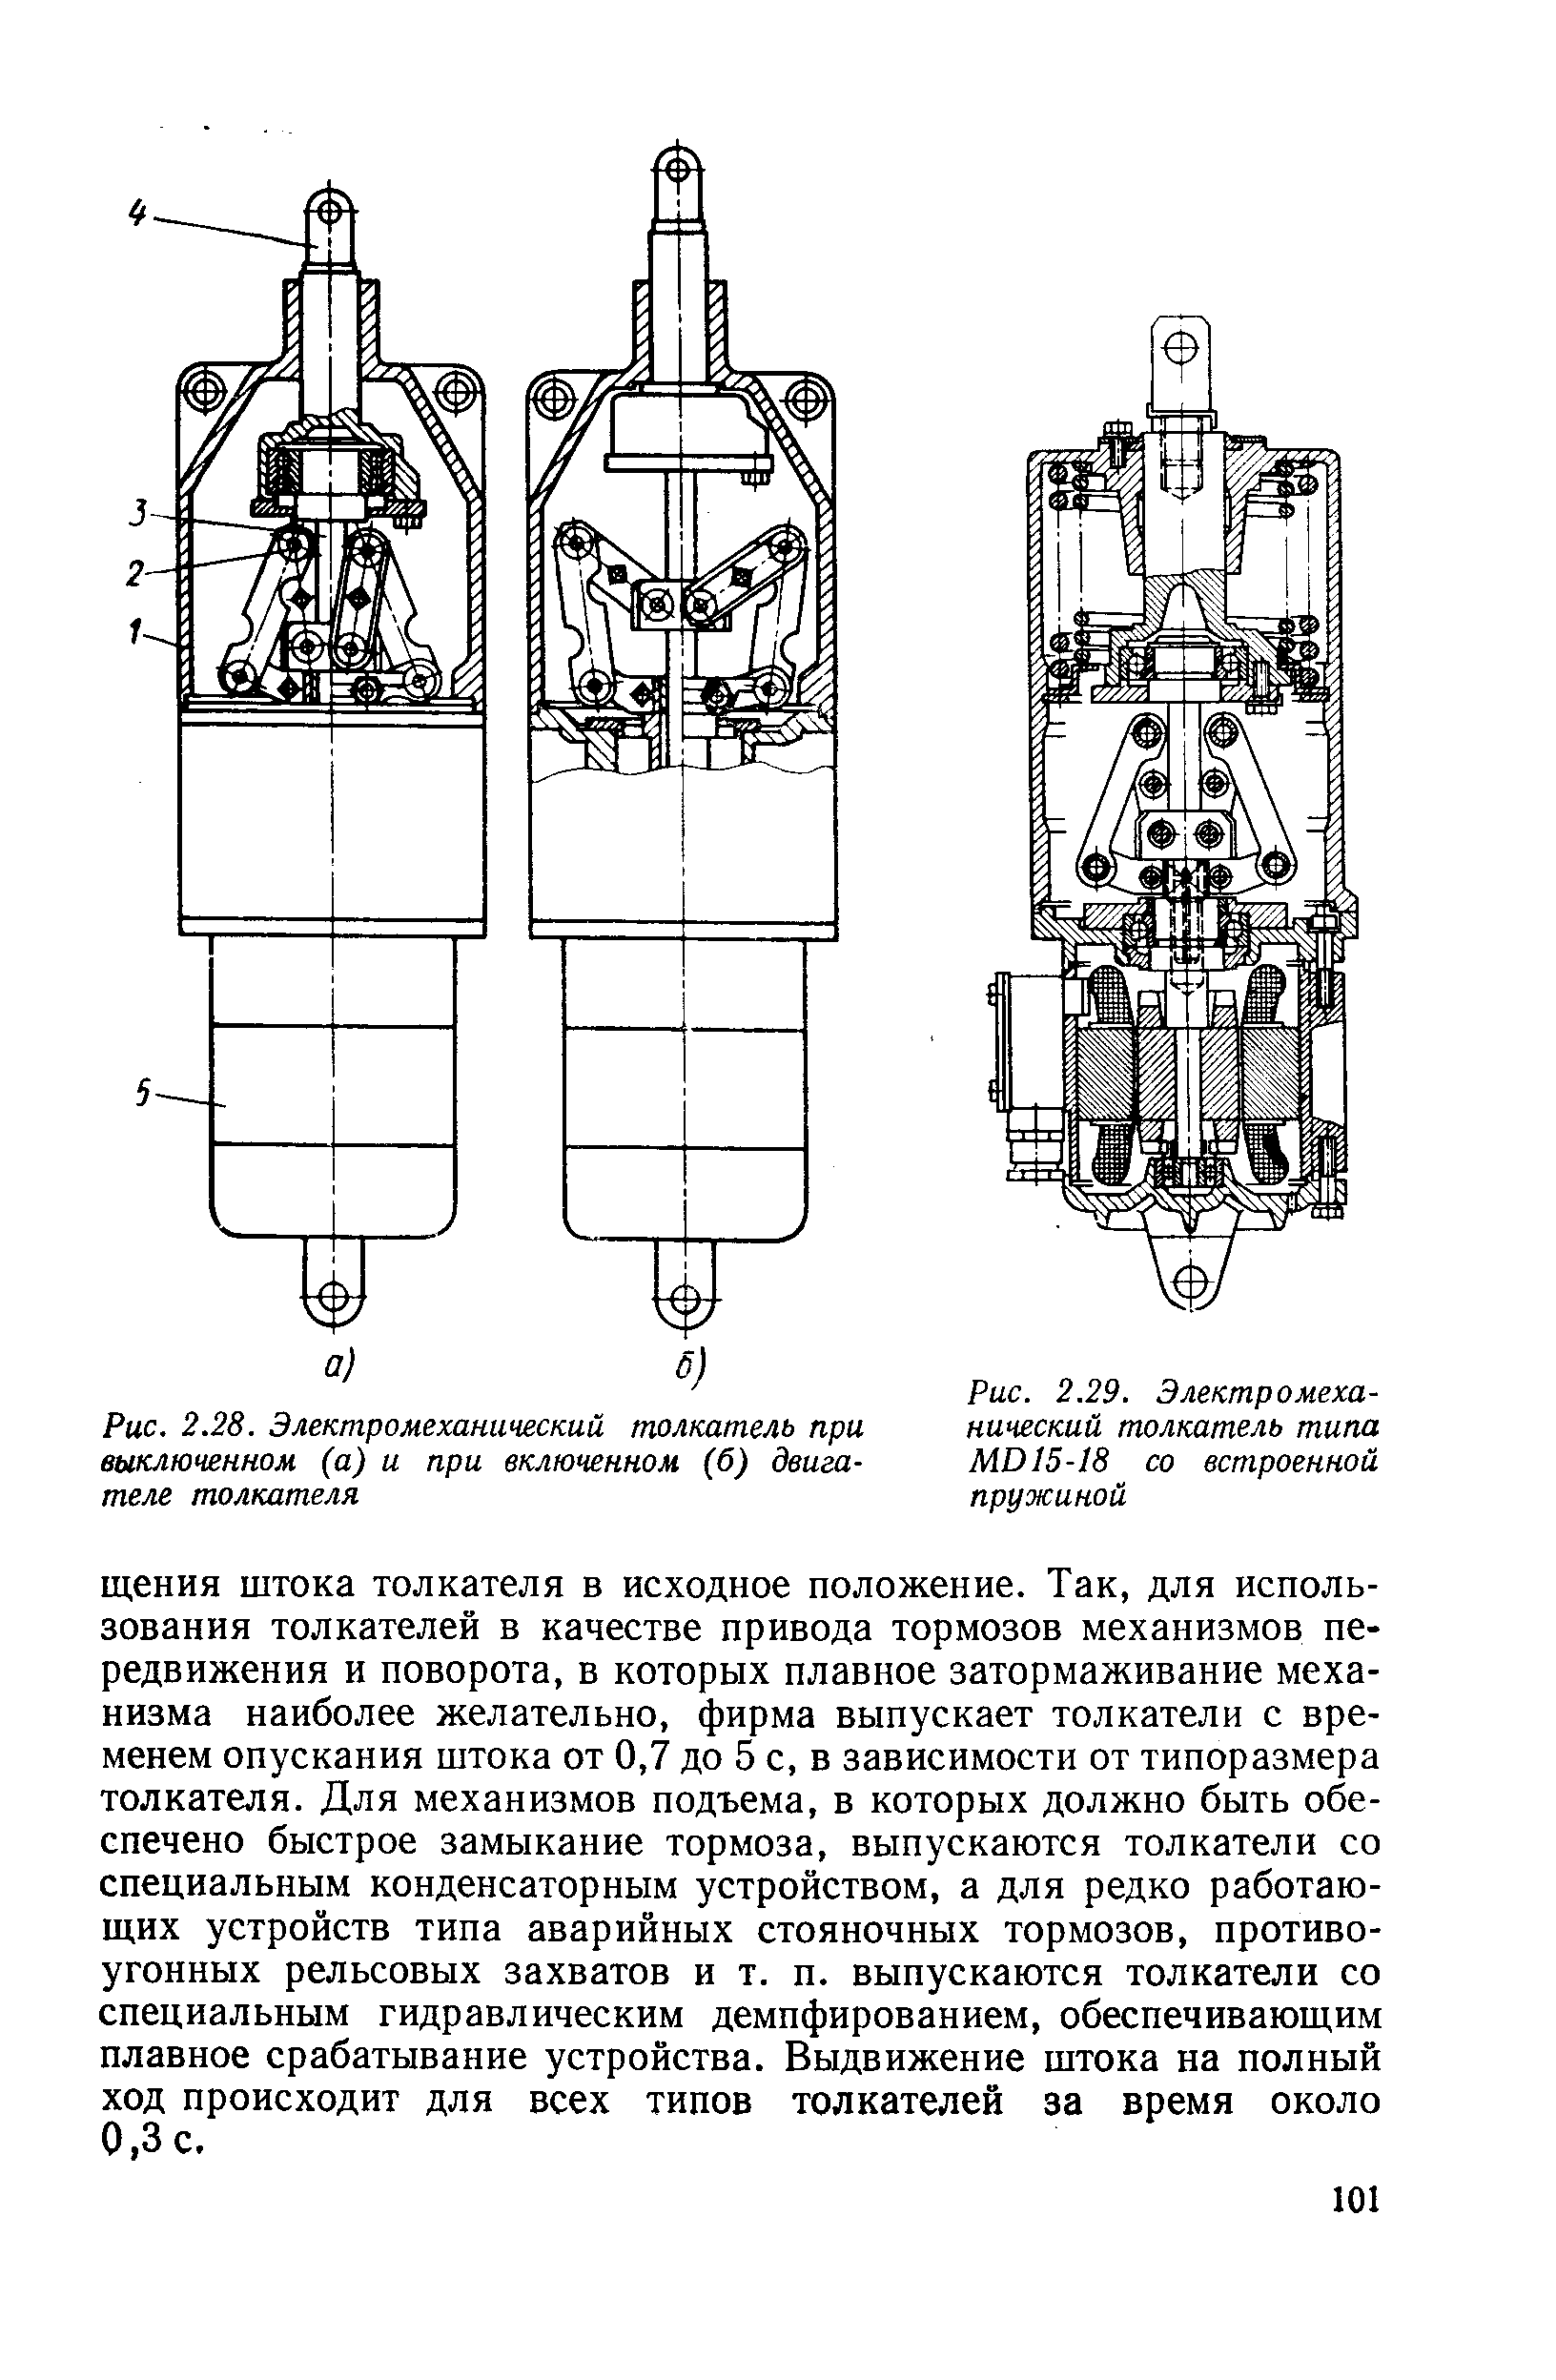 Рис. 2.29. Электромеханический толкатель типа М015-18 со встроенной пружиной
